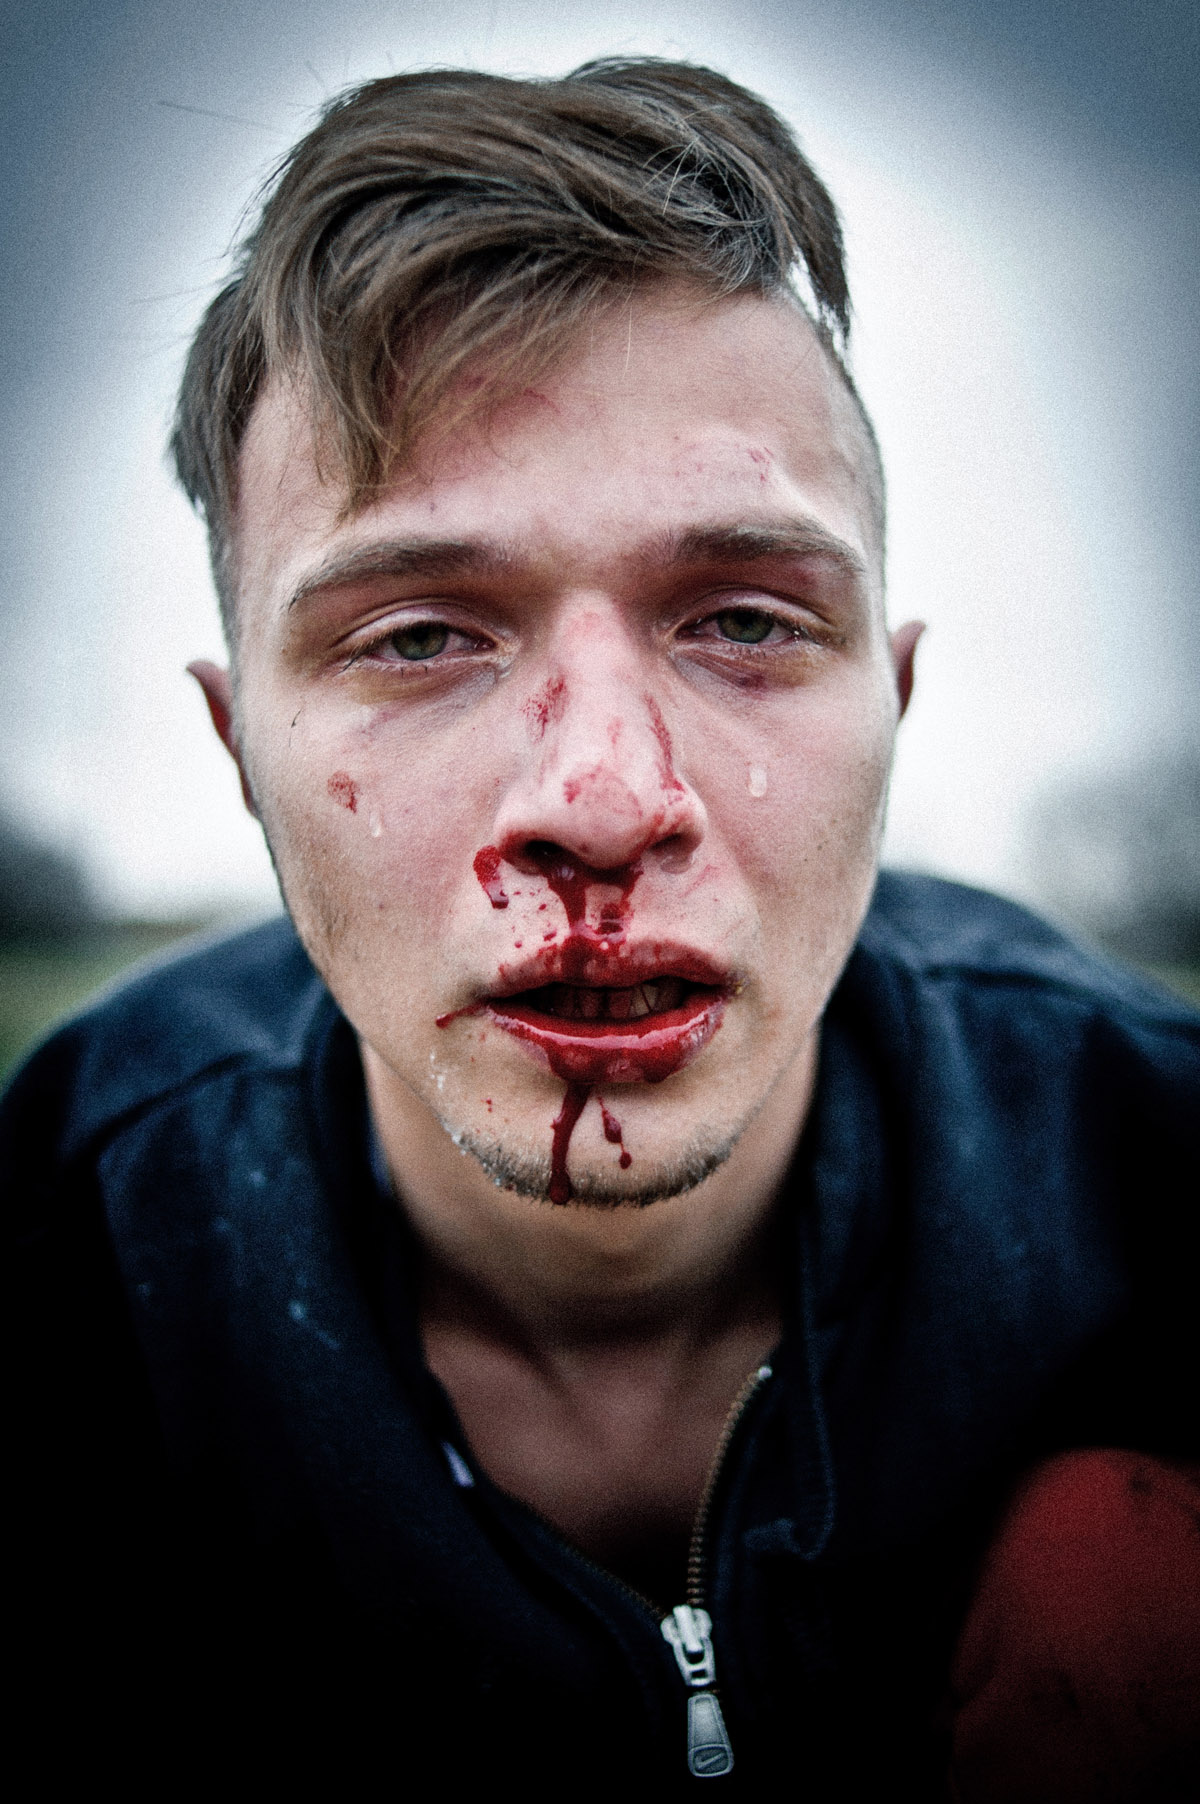 Andrew Lubimov, Hooligans. Erschienen in Vice Nr. 9/2014. Nominiert in der Kategorie Reportagefotografie des Jahres. © Andrew Lubimov 